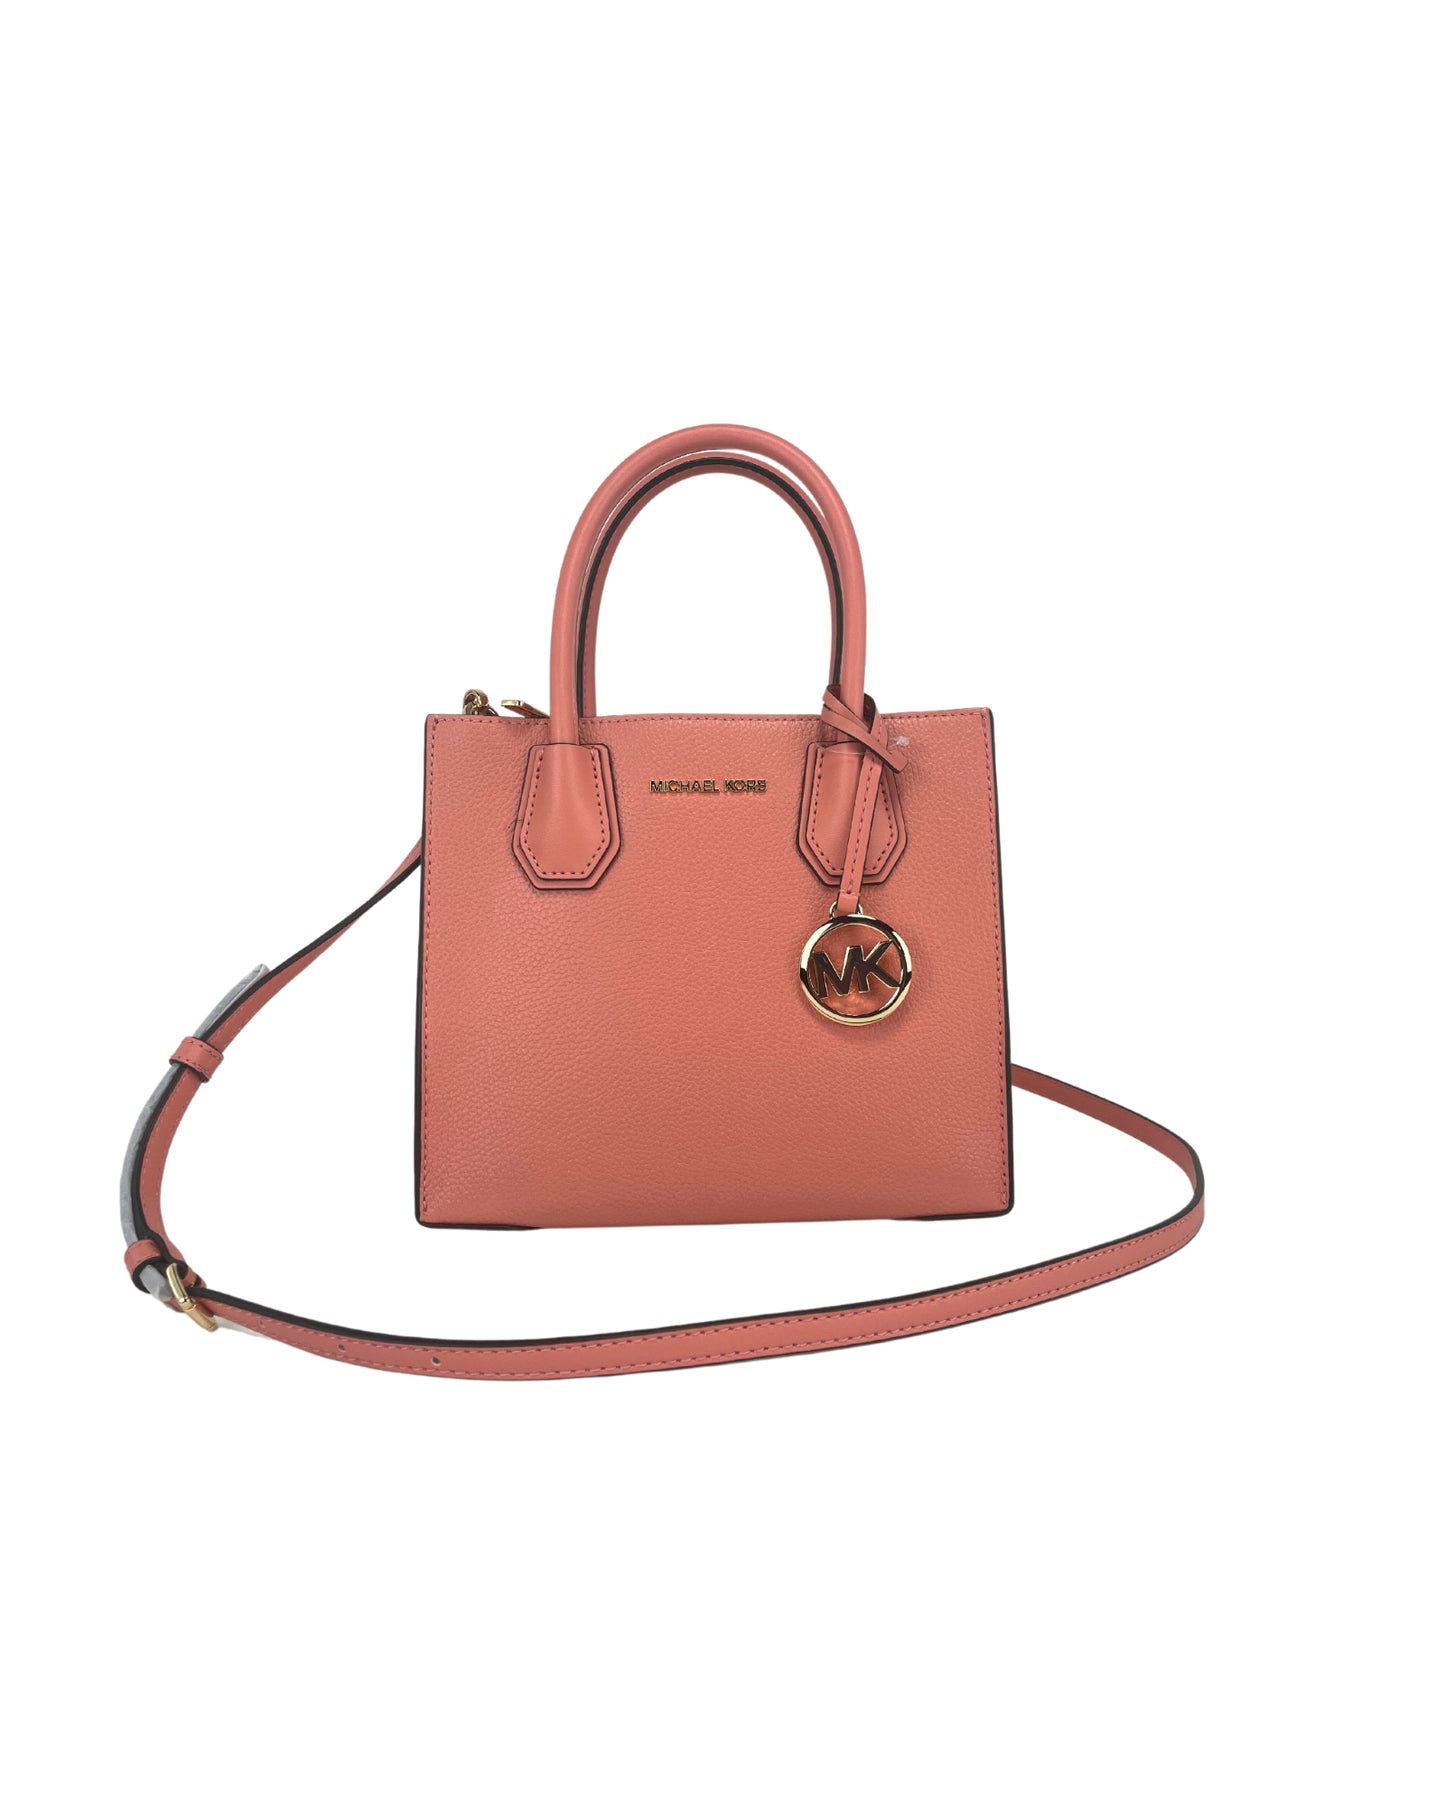 Michael Kors Mercer Medium Messenger Handbag One Size Women